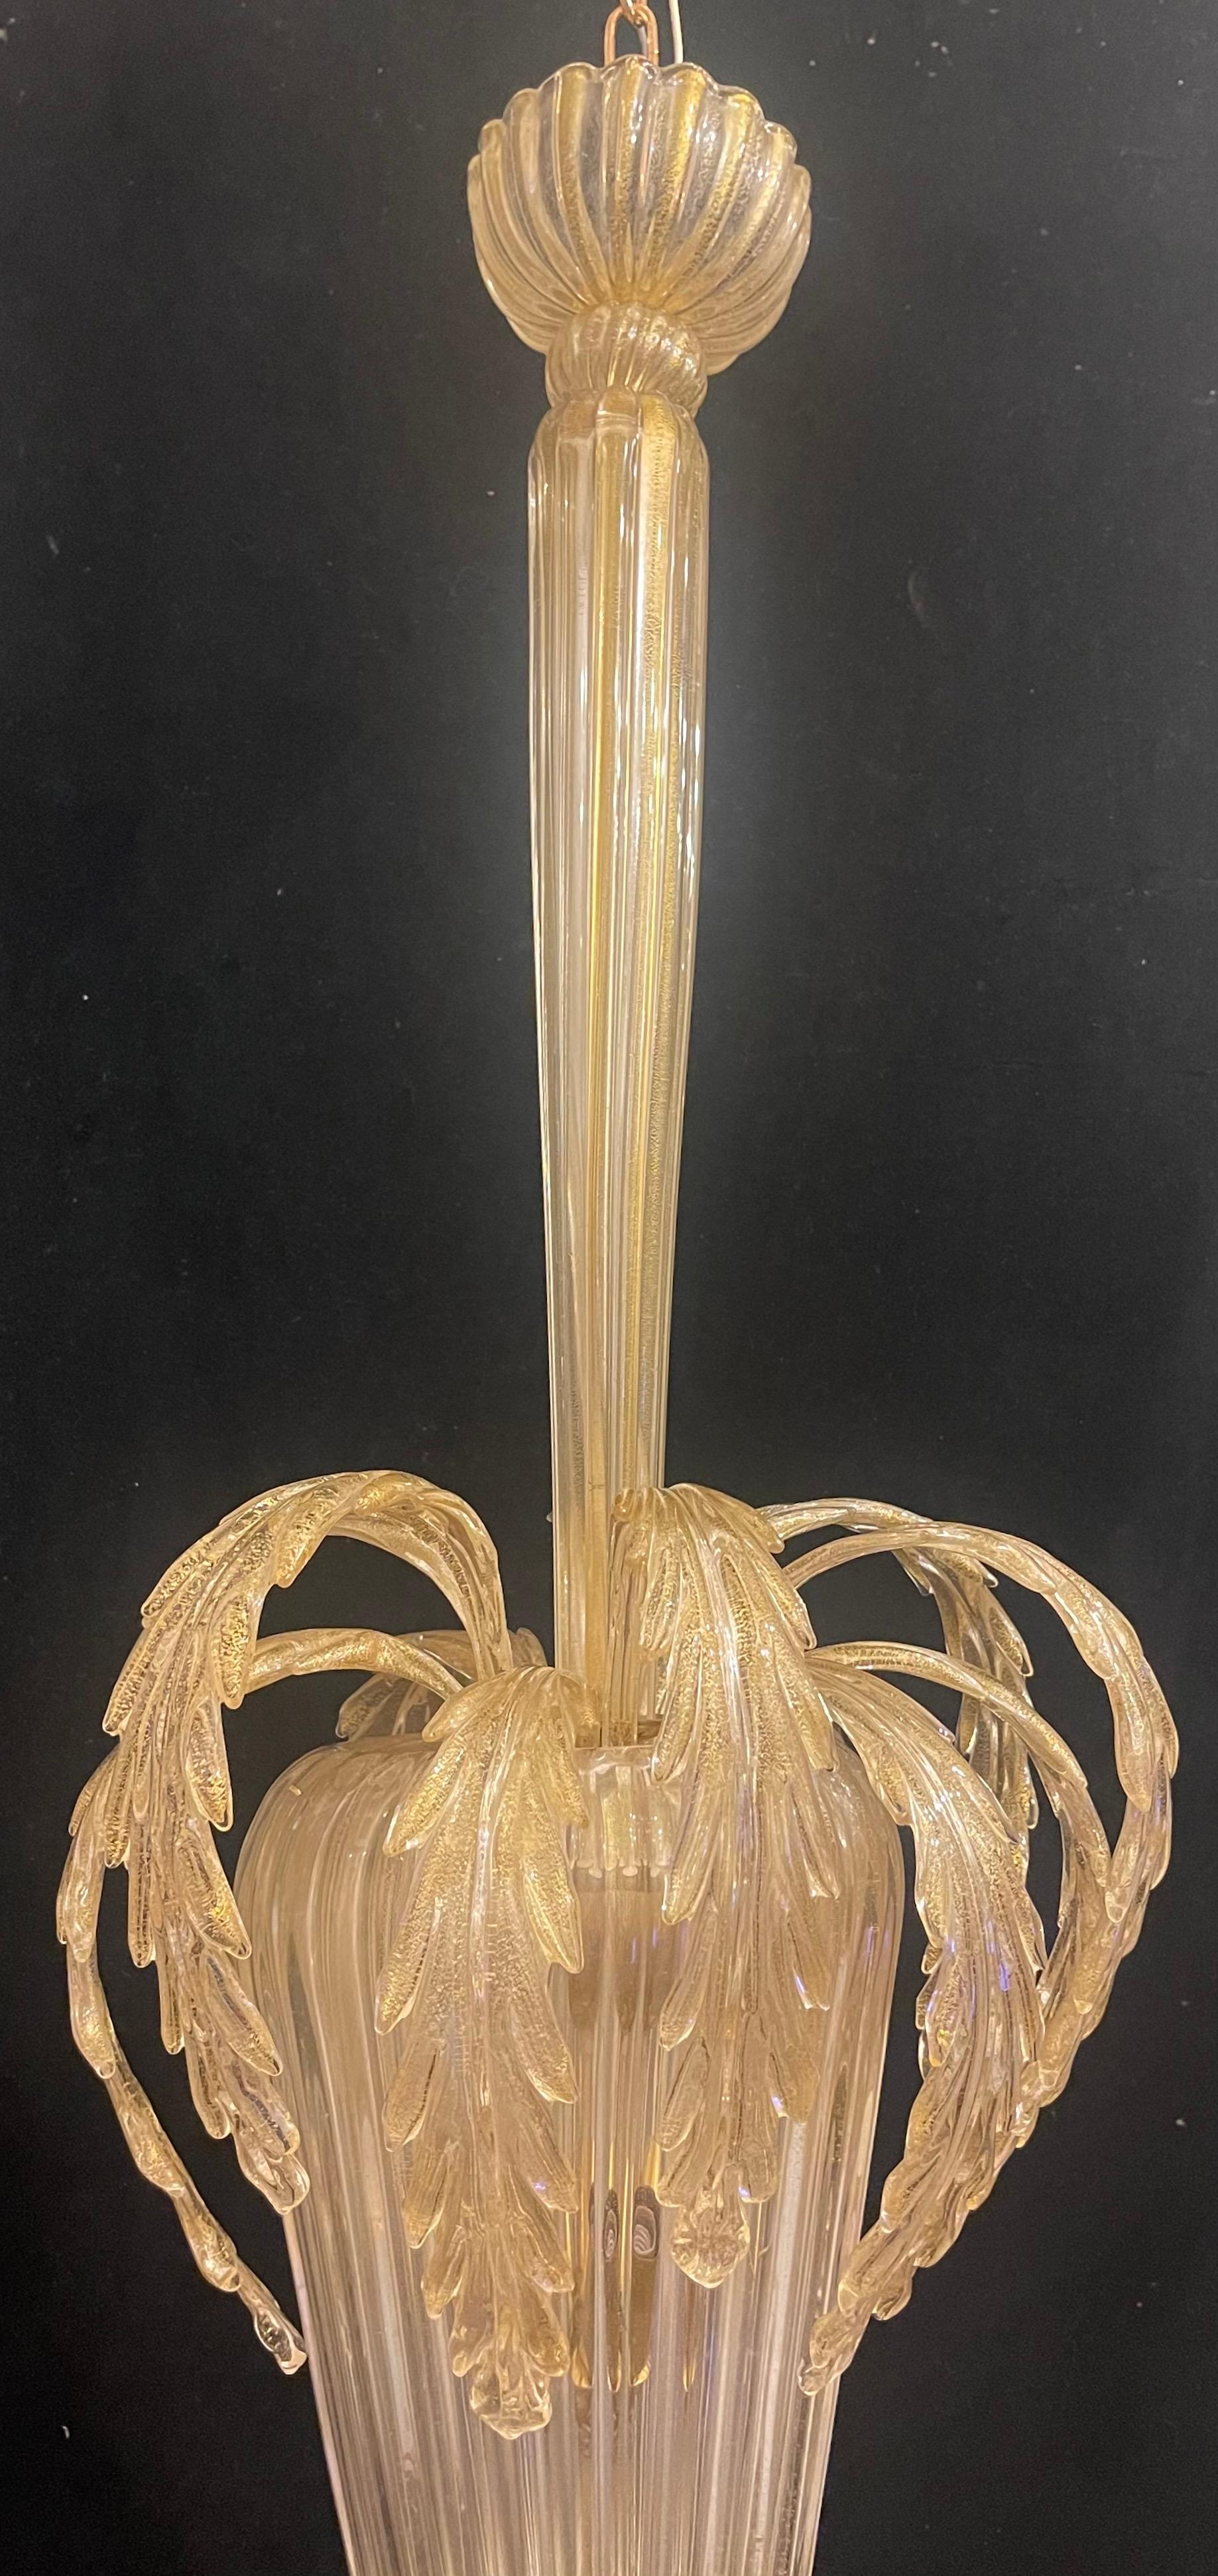 Merveilleux verre soufflé à l'écaille d'or de Murano (Italie) du milieu du siècle dernier, avec des feuilles qui se répandent sur un bol central et trois lampes candélabres internes qui ont été entièrement recâblées avec de nouvelles douilles. Ce